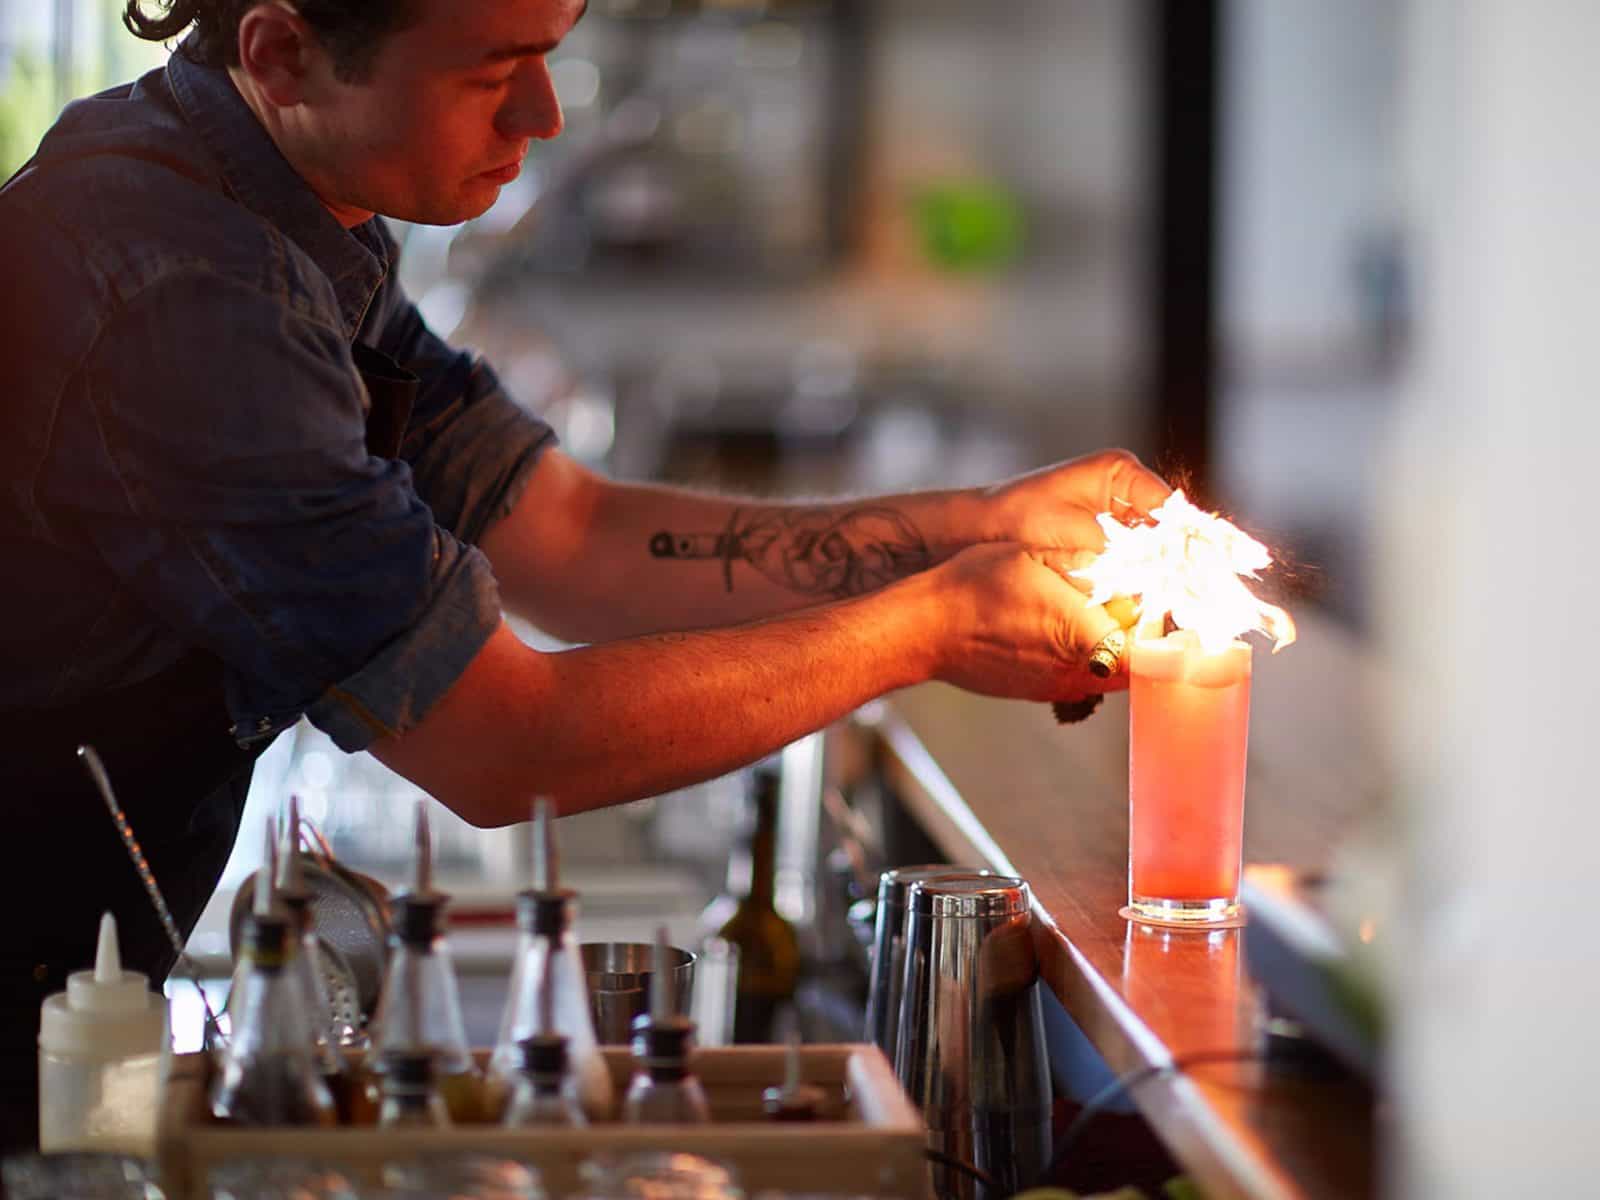 Barman lighting a cocktail on the bar